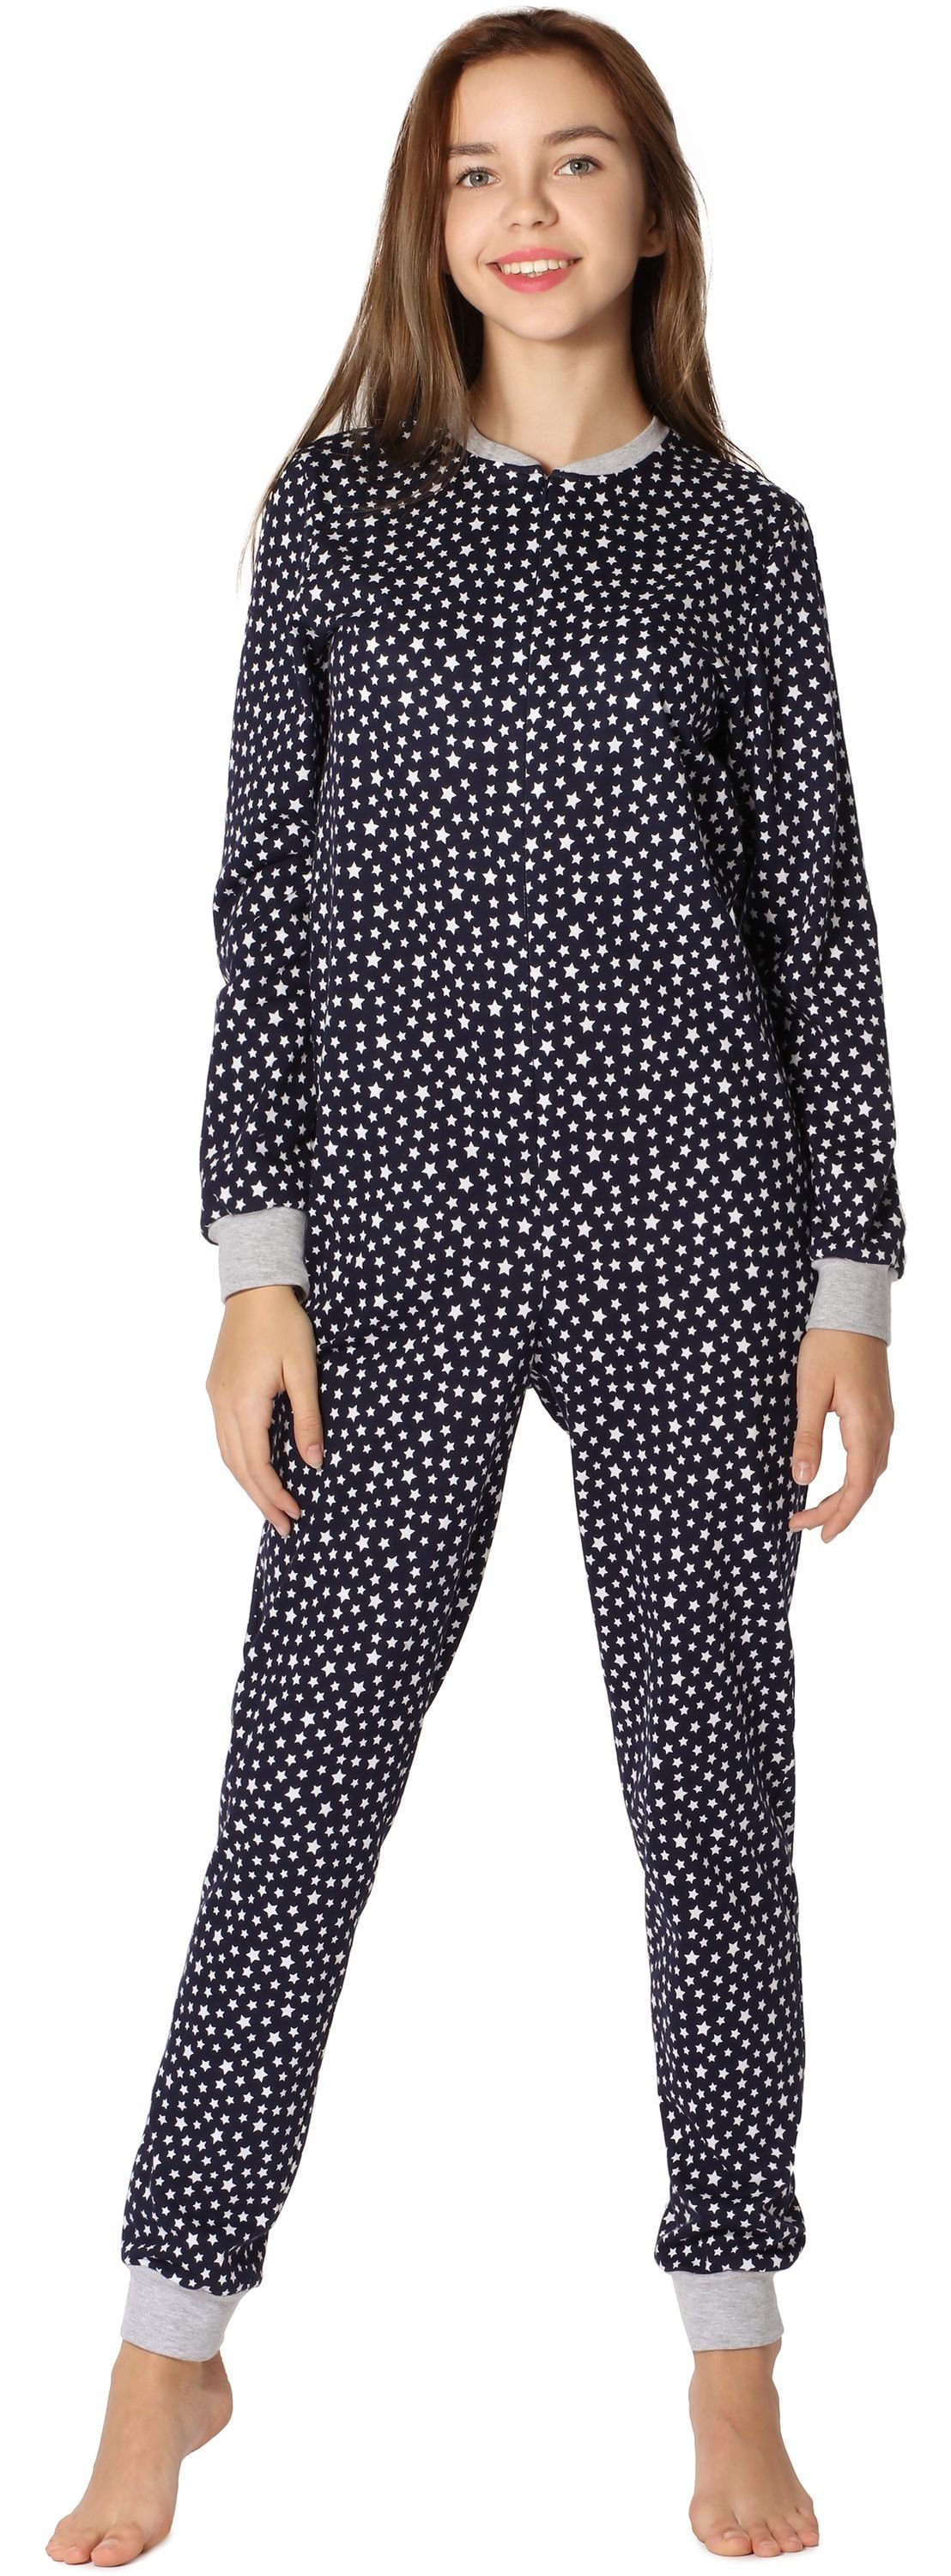 Merry Style Schlafanzug Mädchen Jugend Schlafanzug Schlafoverall MS10-235 Marineblau/Sterne